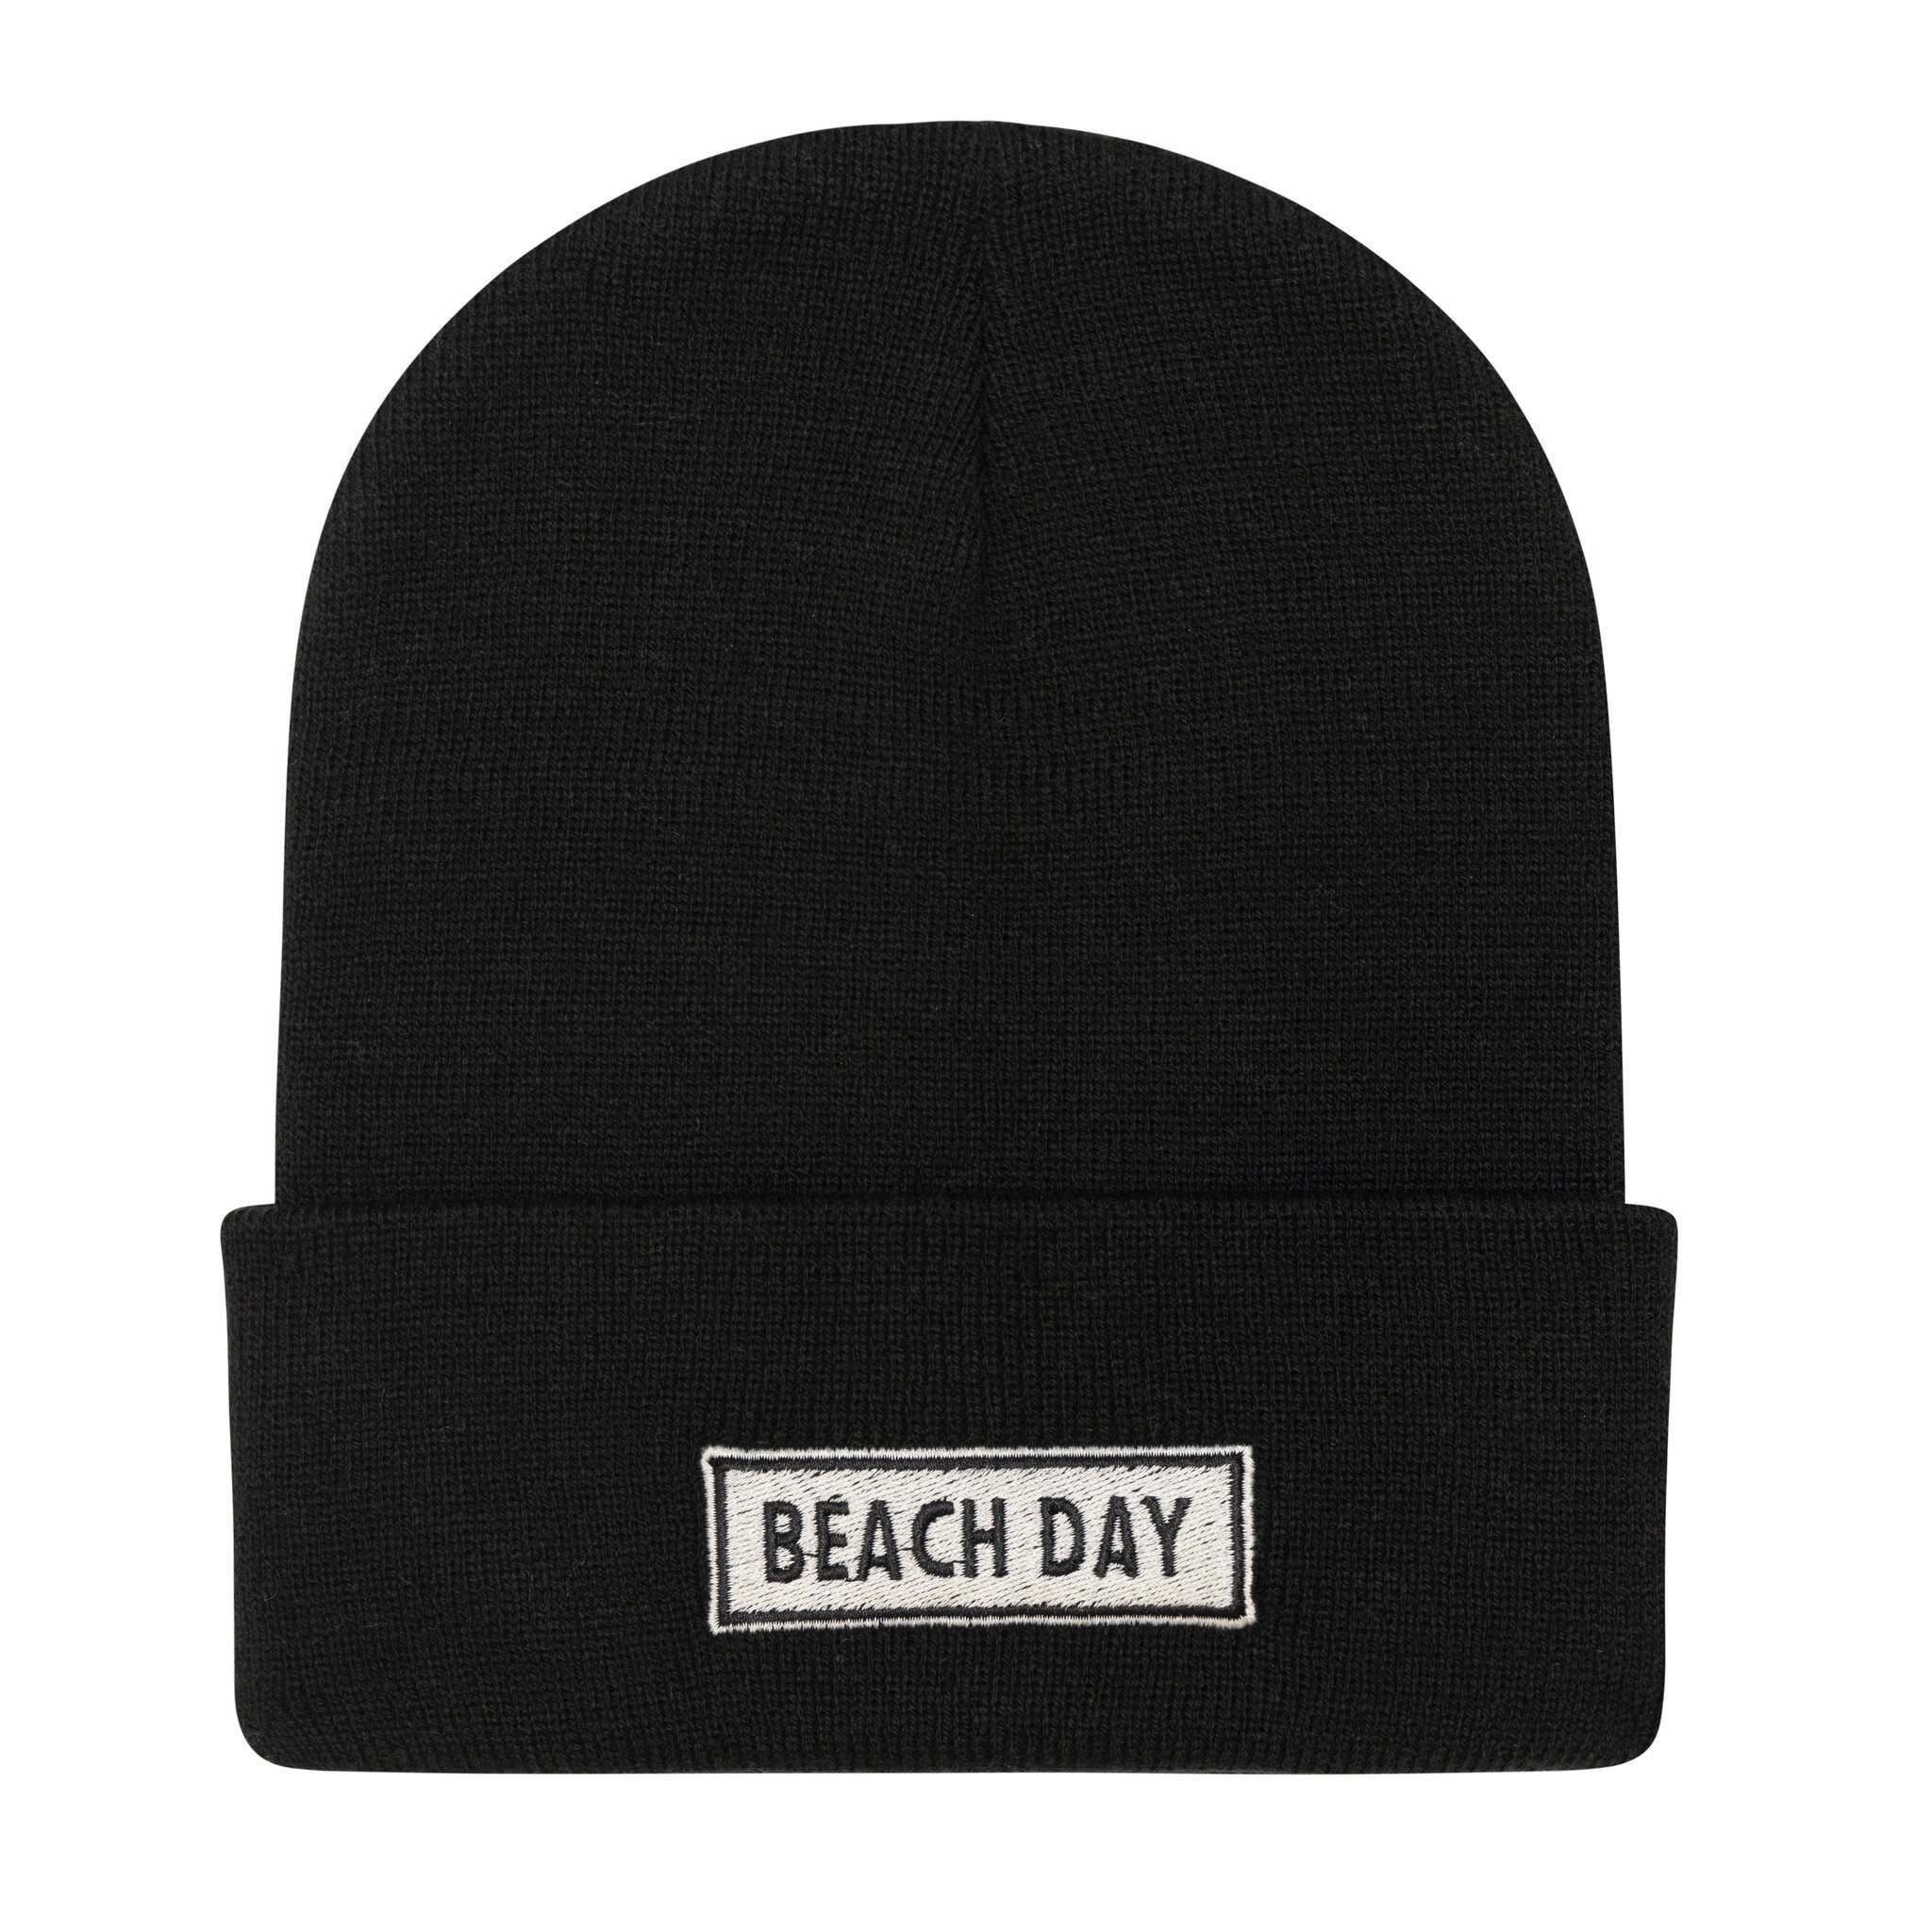 Beach Day Every Day Beach Day Every Day : Beach Day Beanie - Black